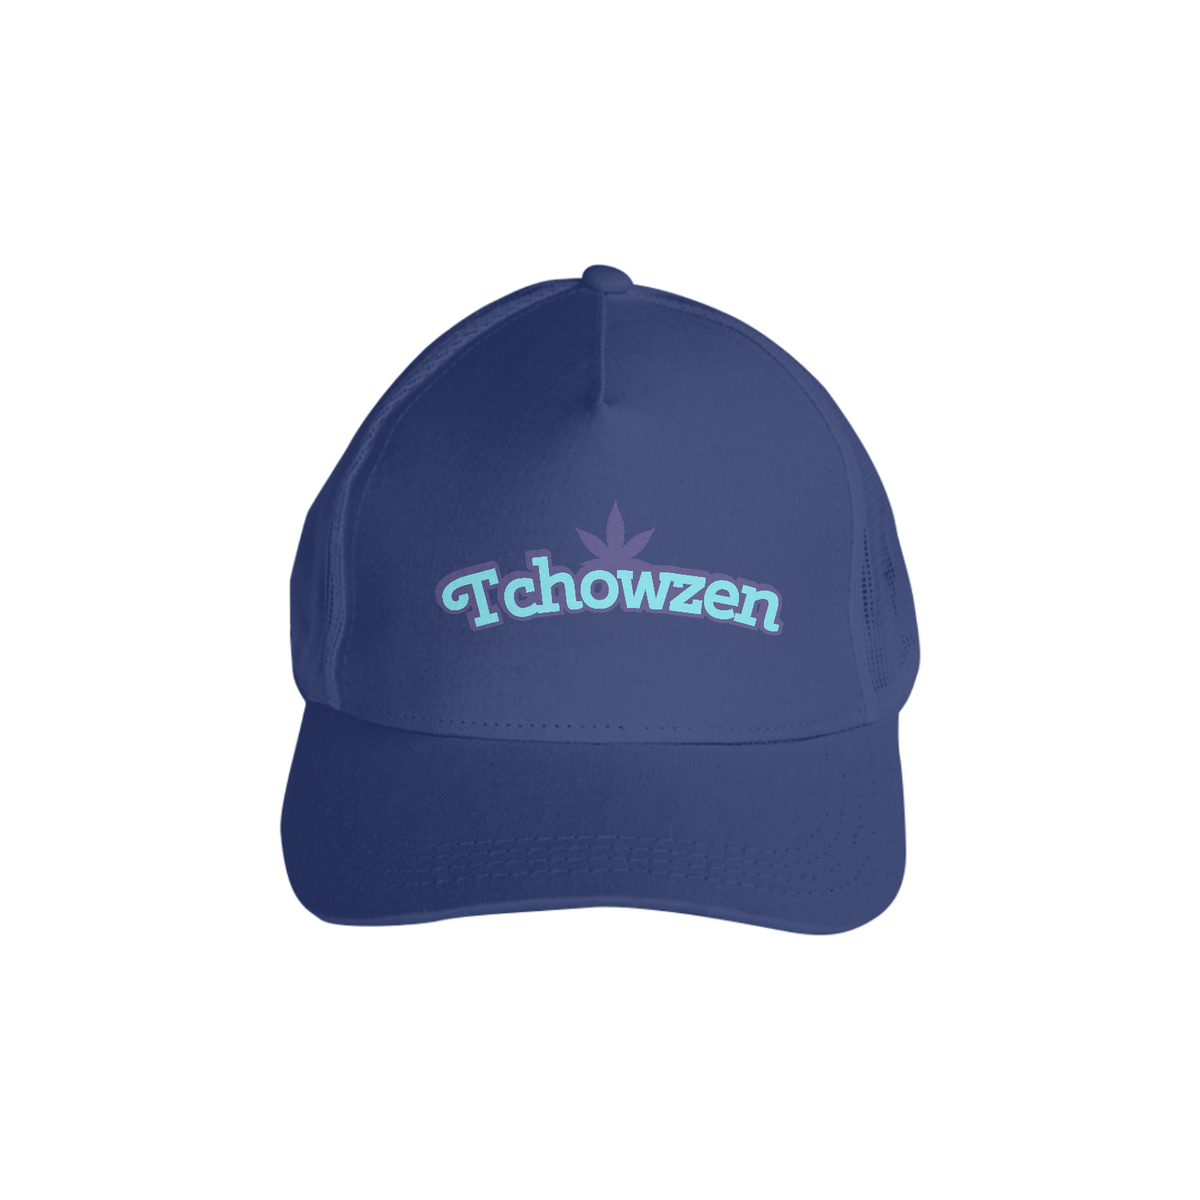 Nome do produto: Tchowzen com tela